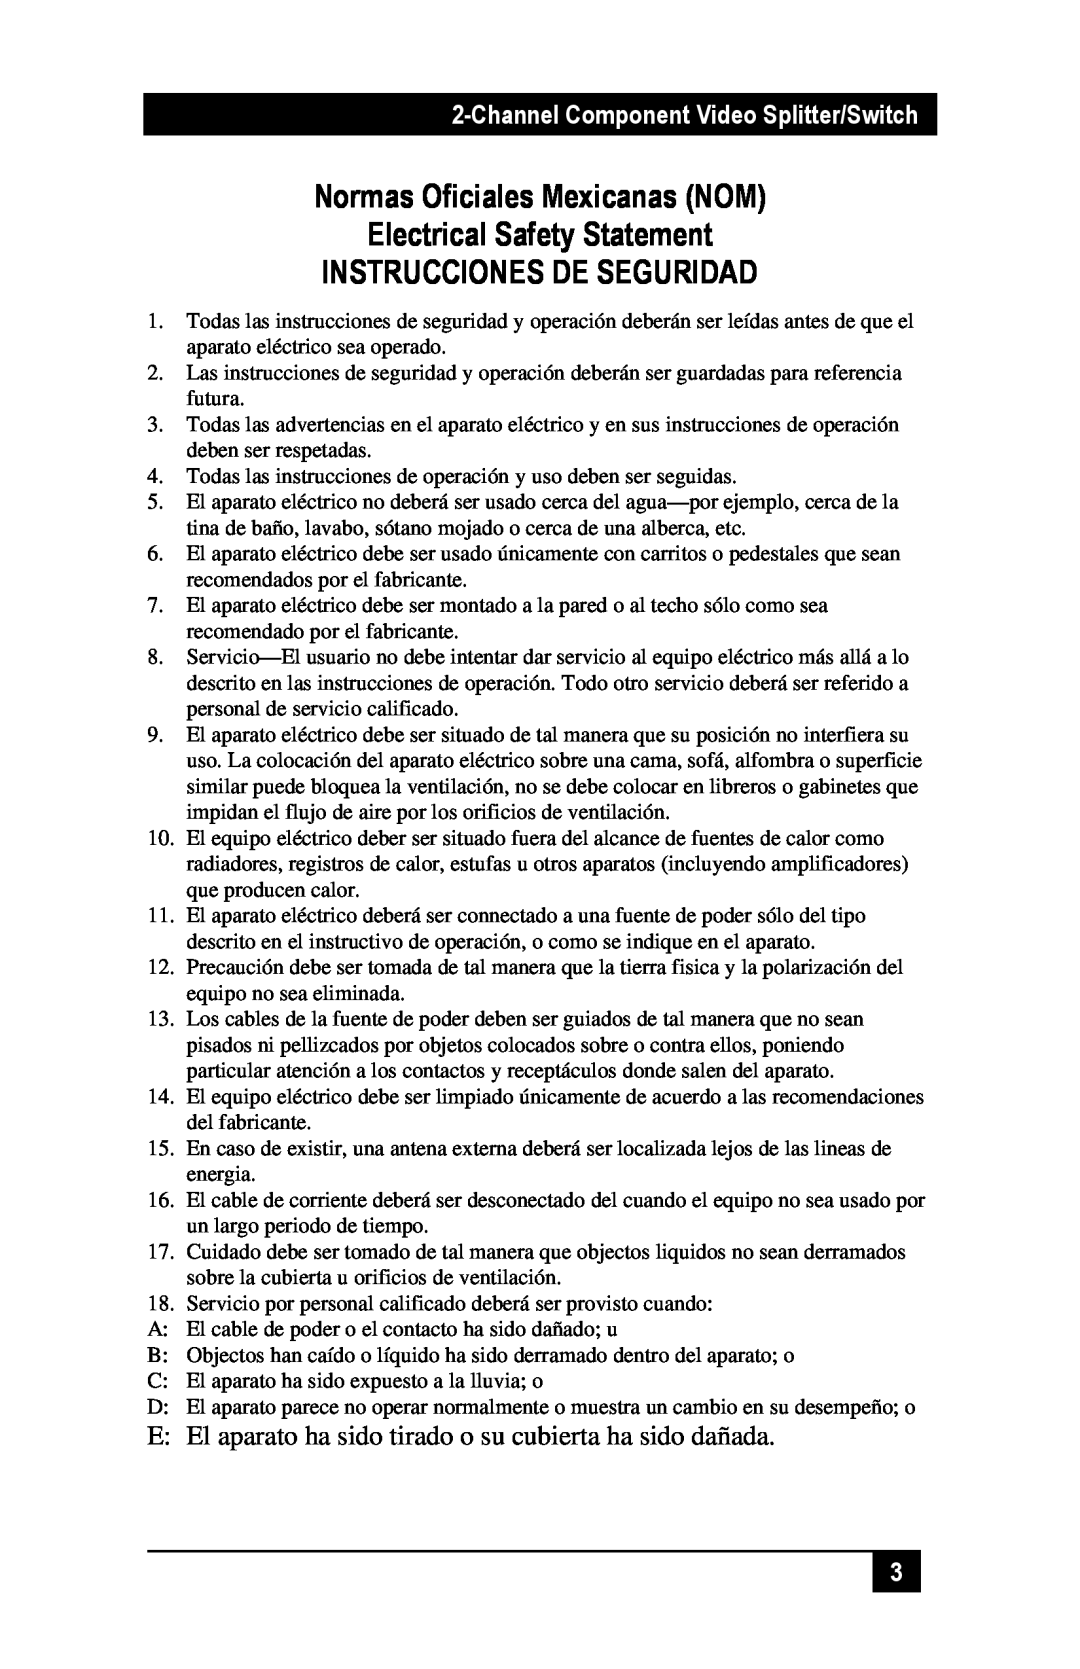 Black Box AC1030A manual Normas Oficiales Mexicanas NOM Electrical Safety Statement, Instrucciones De Seguridad 